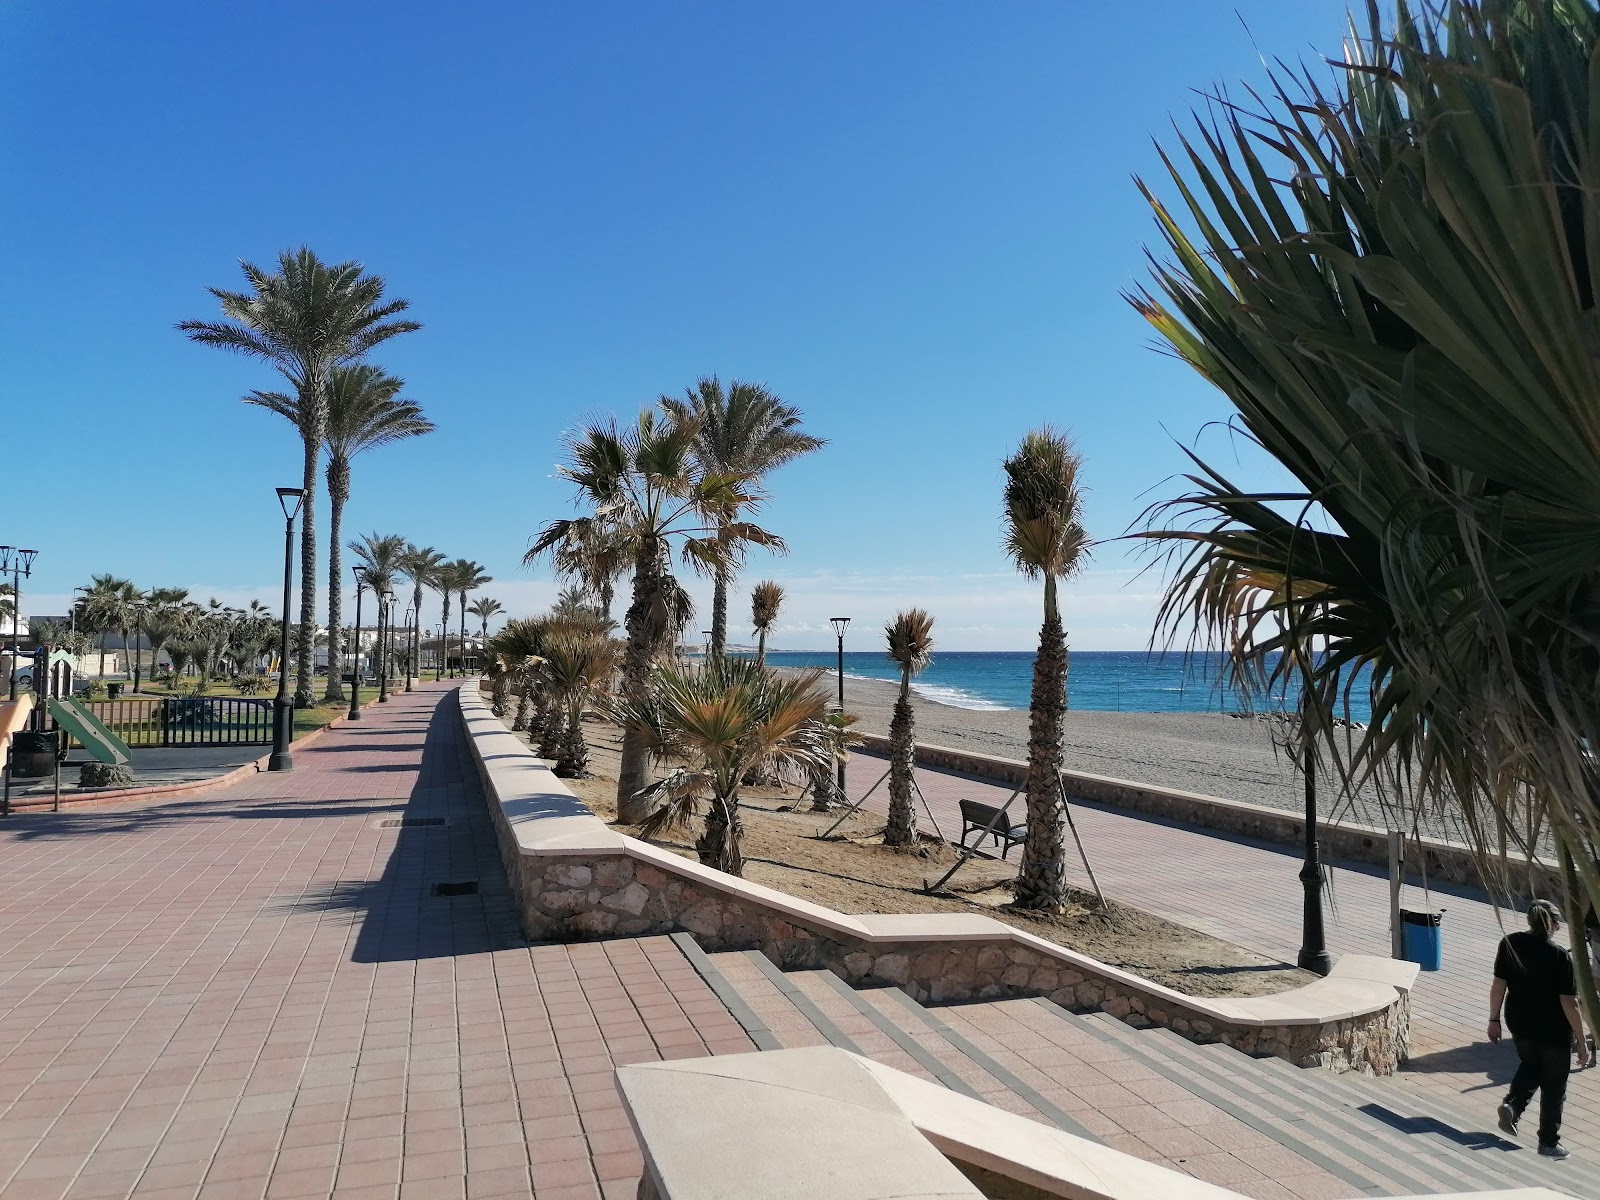 Foto af Playa de Balanegra - populært sted blandt afslapningskendere